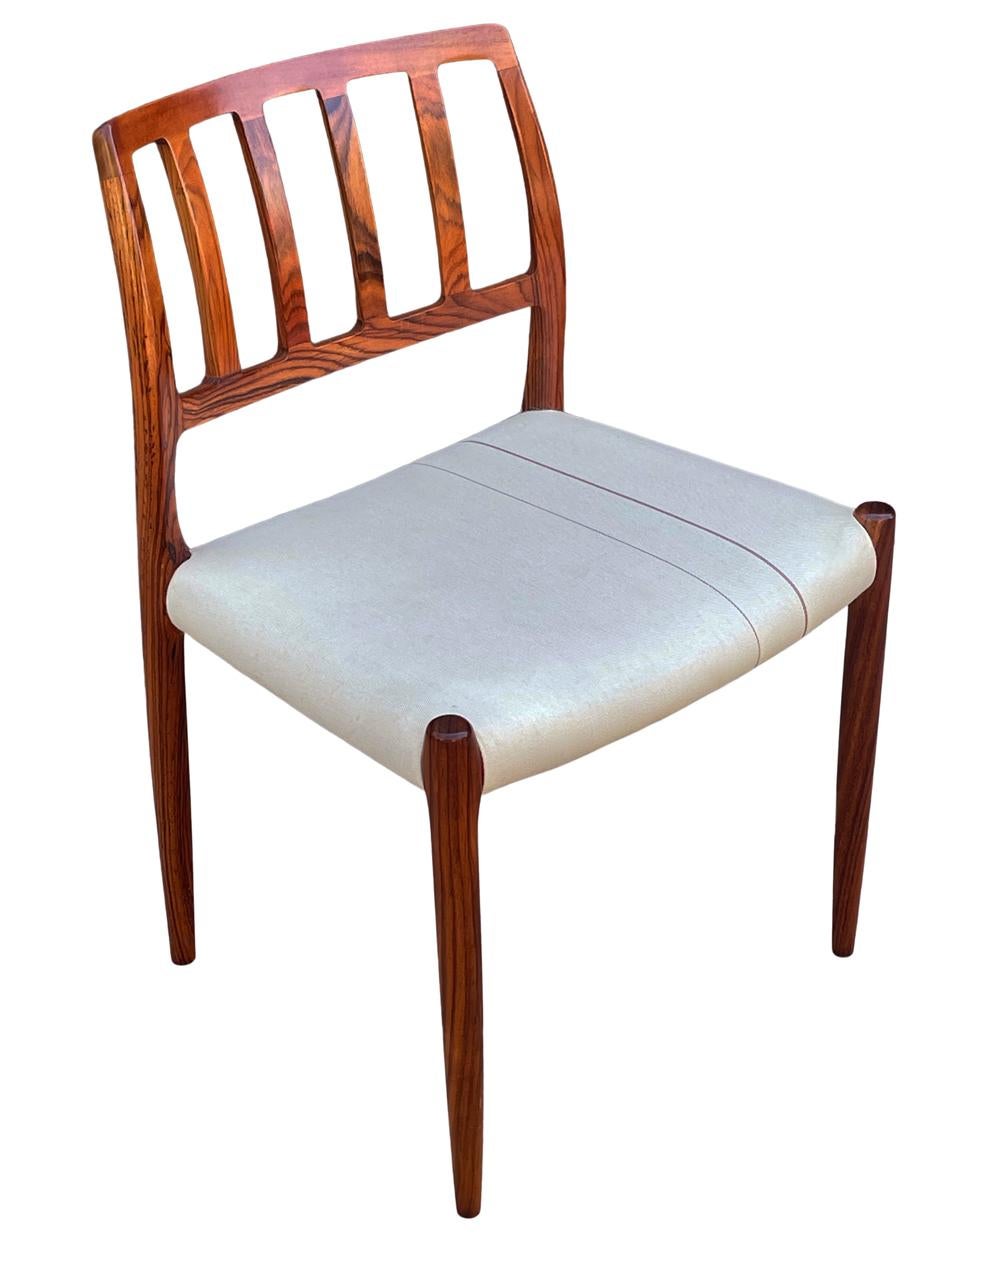 Ein kompletter Satz von 8 Esszimmerstühlen, entworfen von Neils O. Möller und hergestellt in Dänemark um 1960 herum. Sie sind aus massivem Palisanderholz gefertigt und mit Original-Sitzkissen aus Stoff ausgestattet. Die geformten Rückenlehnen sind